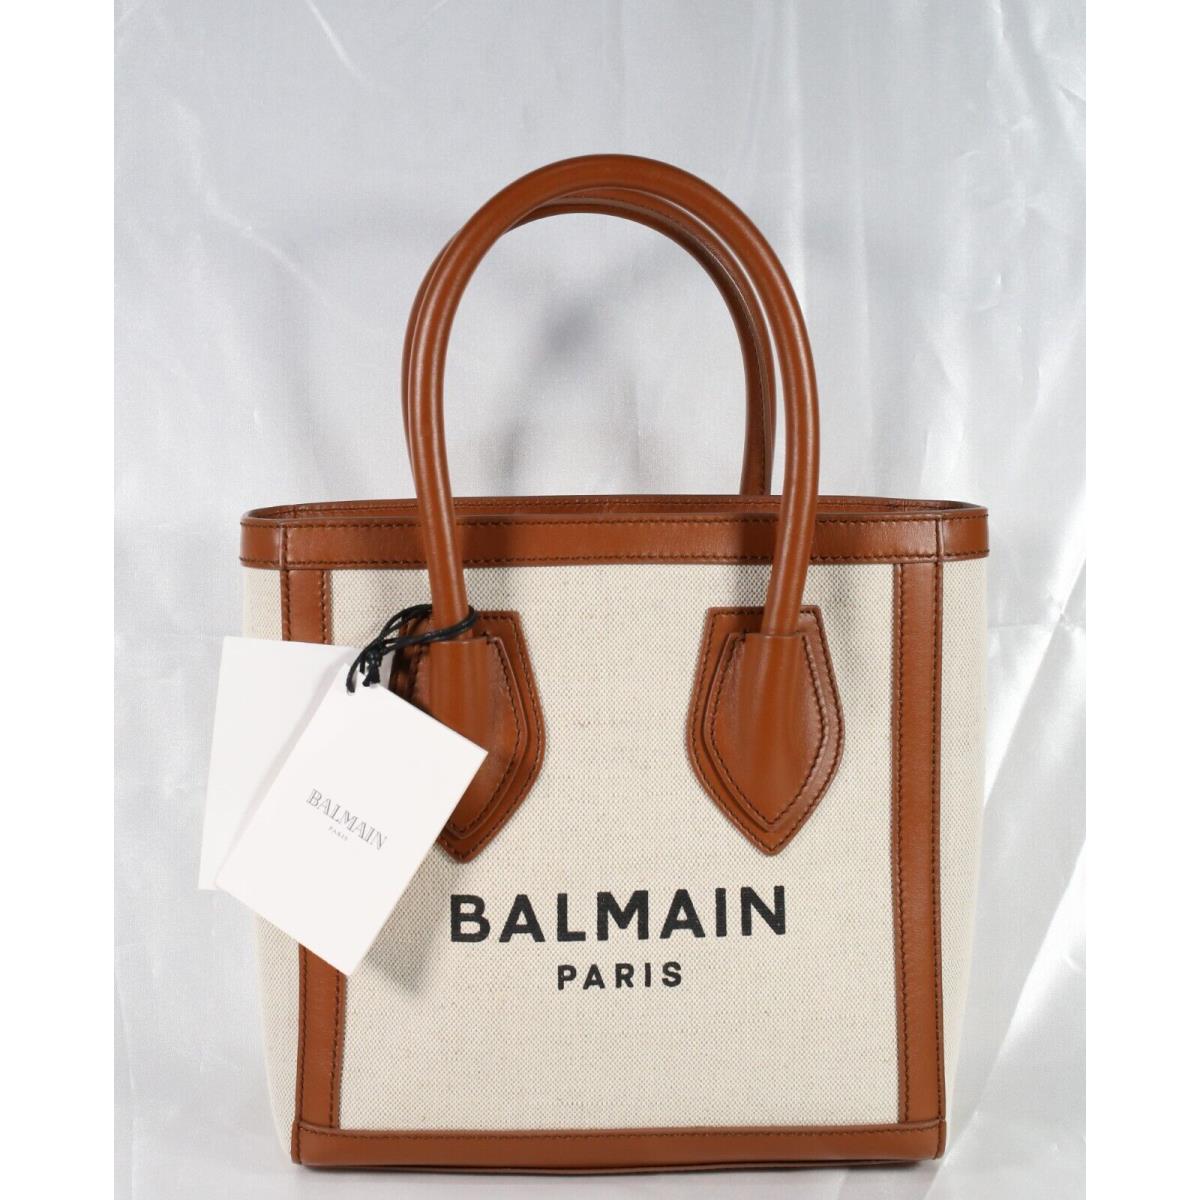 Balmain VN0FA640 B-army 26 Shopper Bag 10 x 11 x 3.5